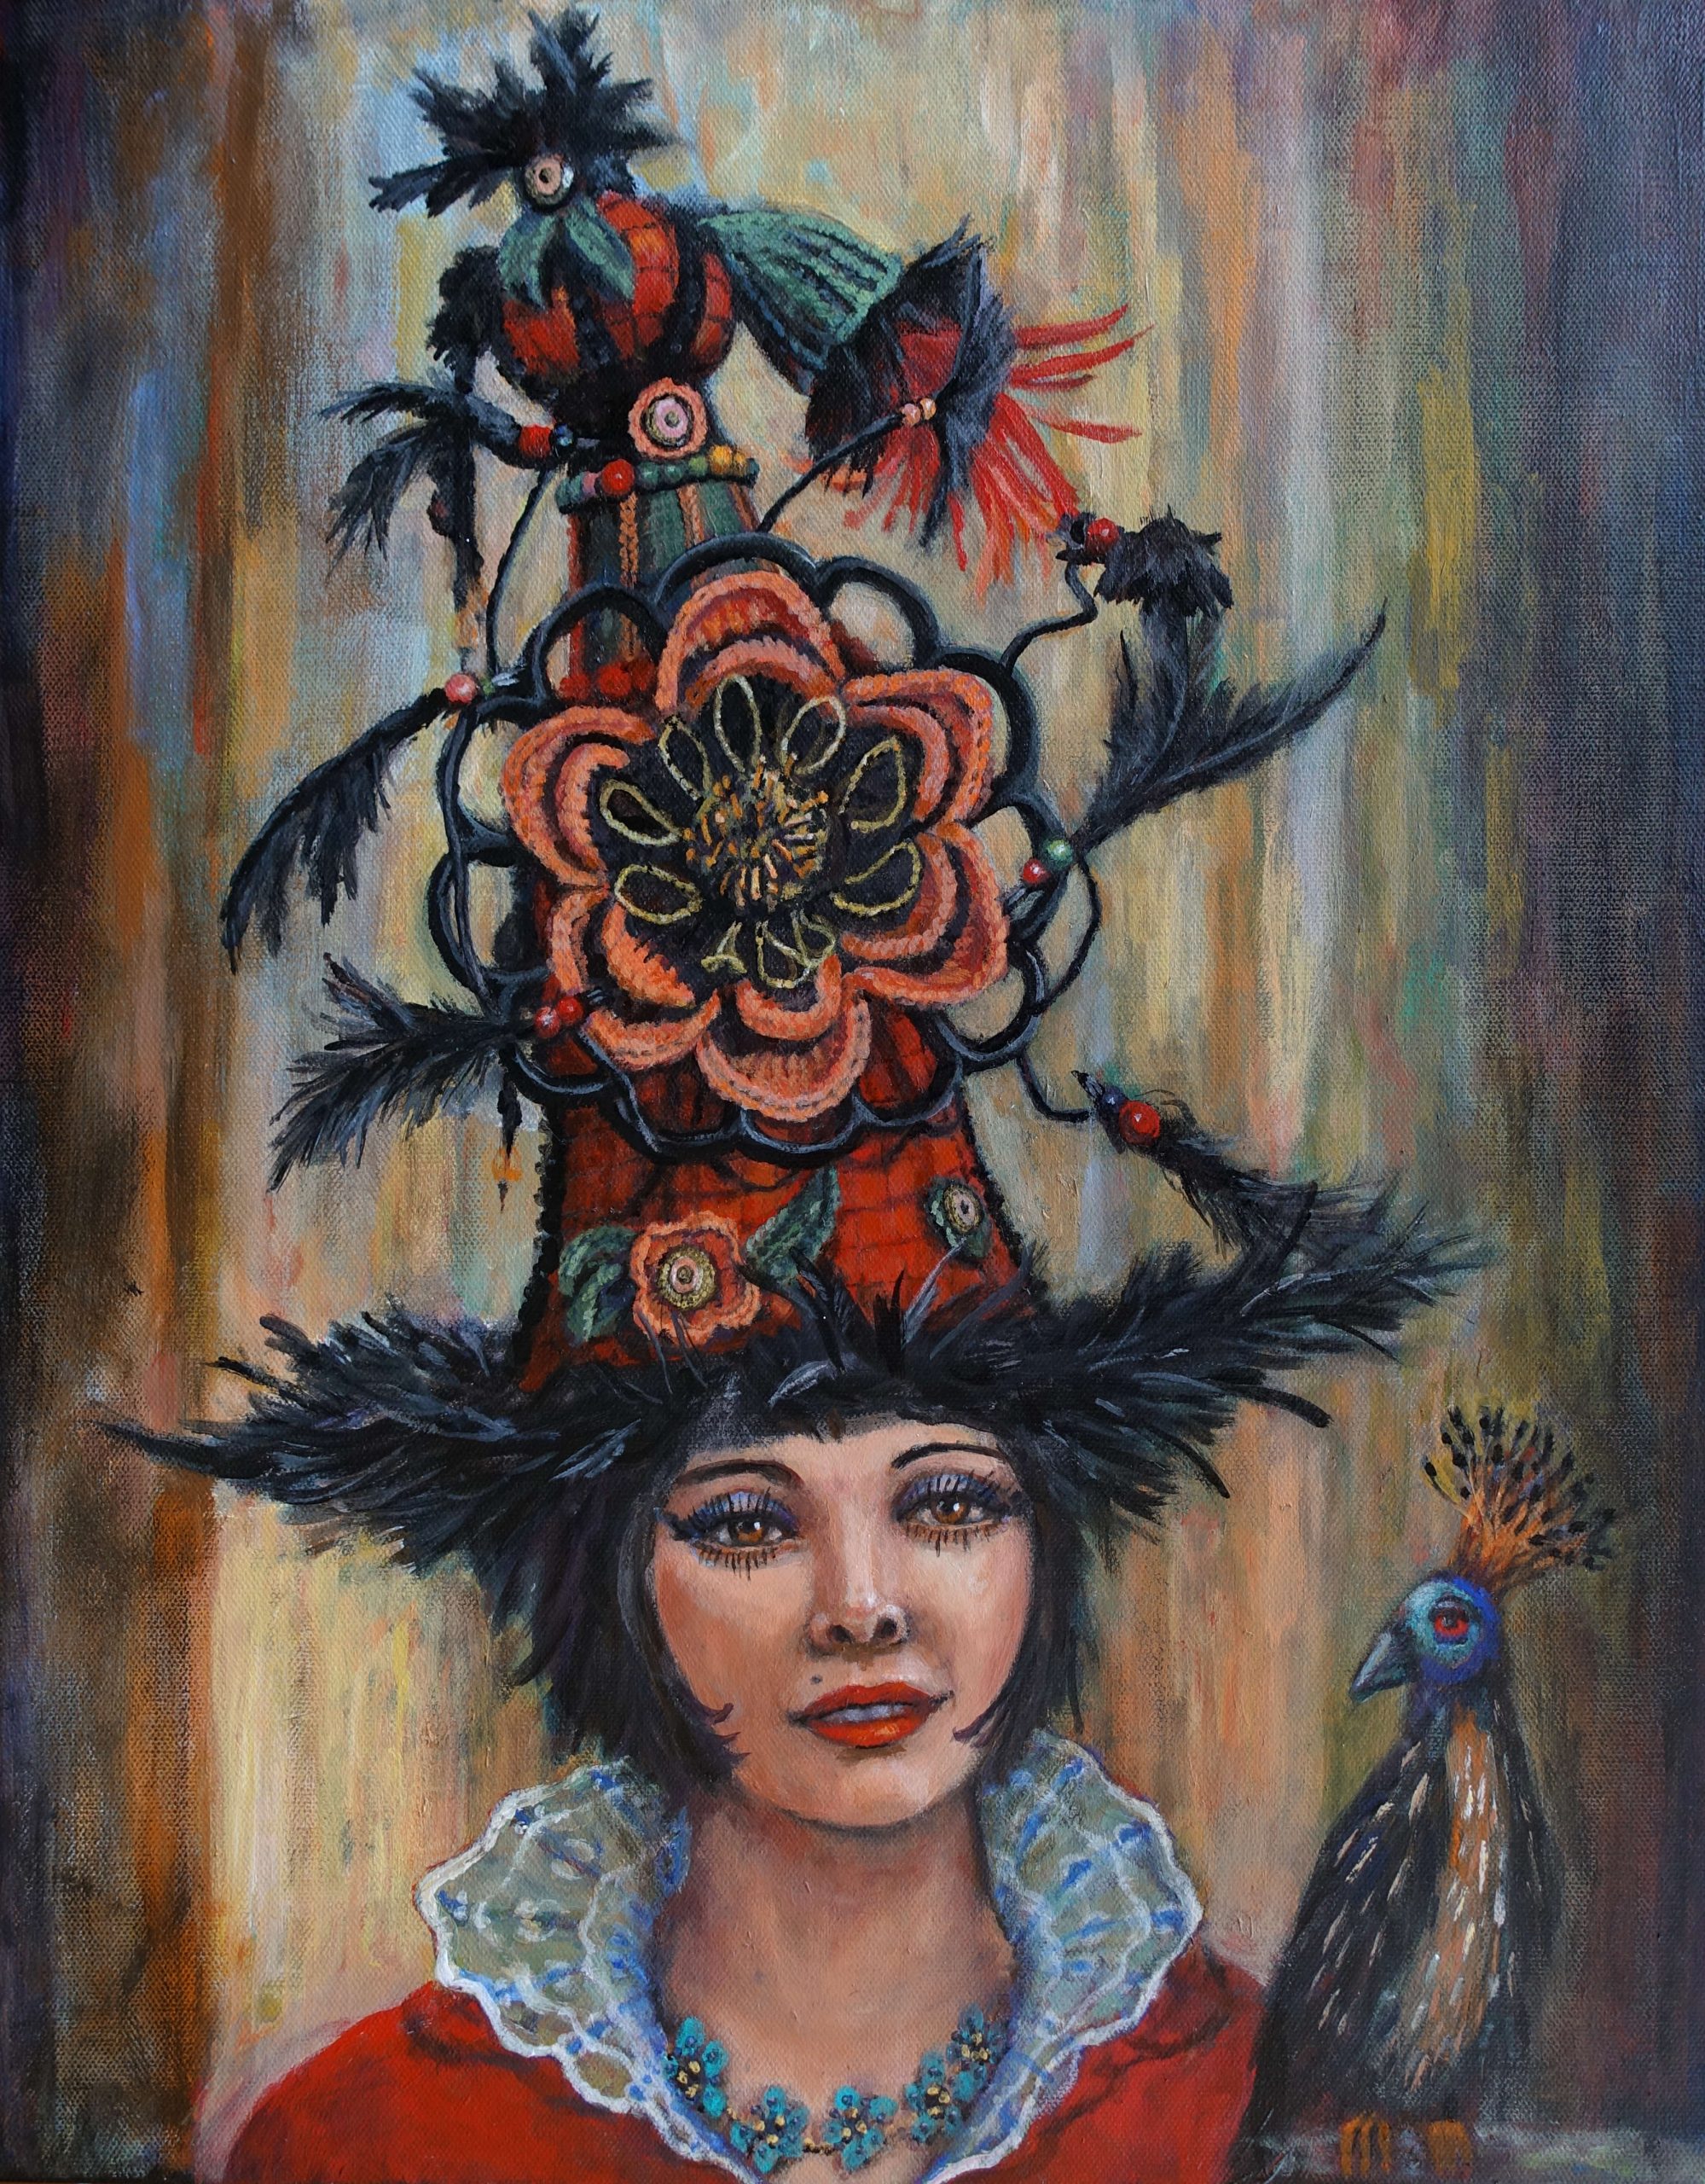 Portrait of girl wearing an arty hat